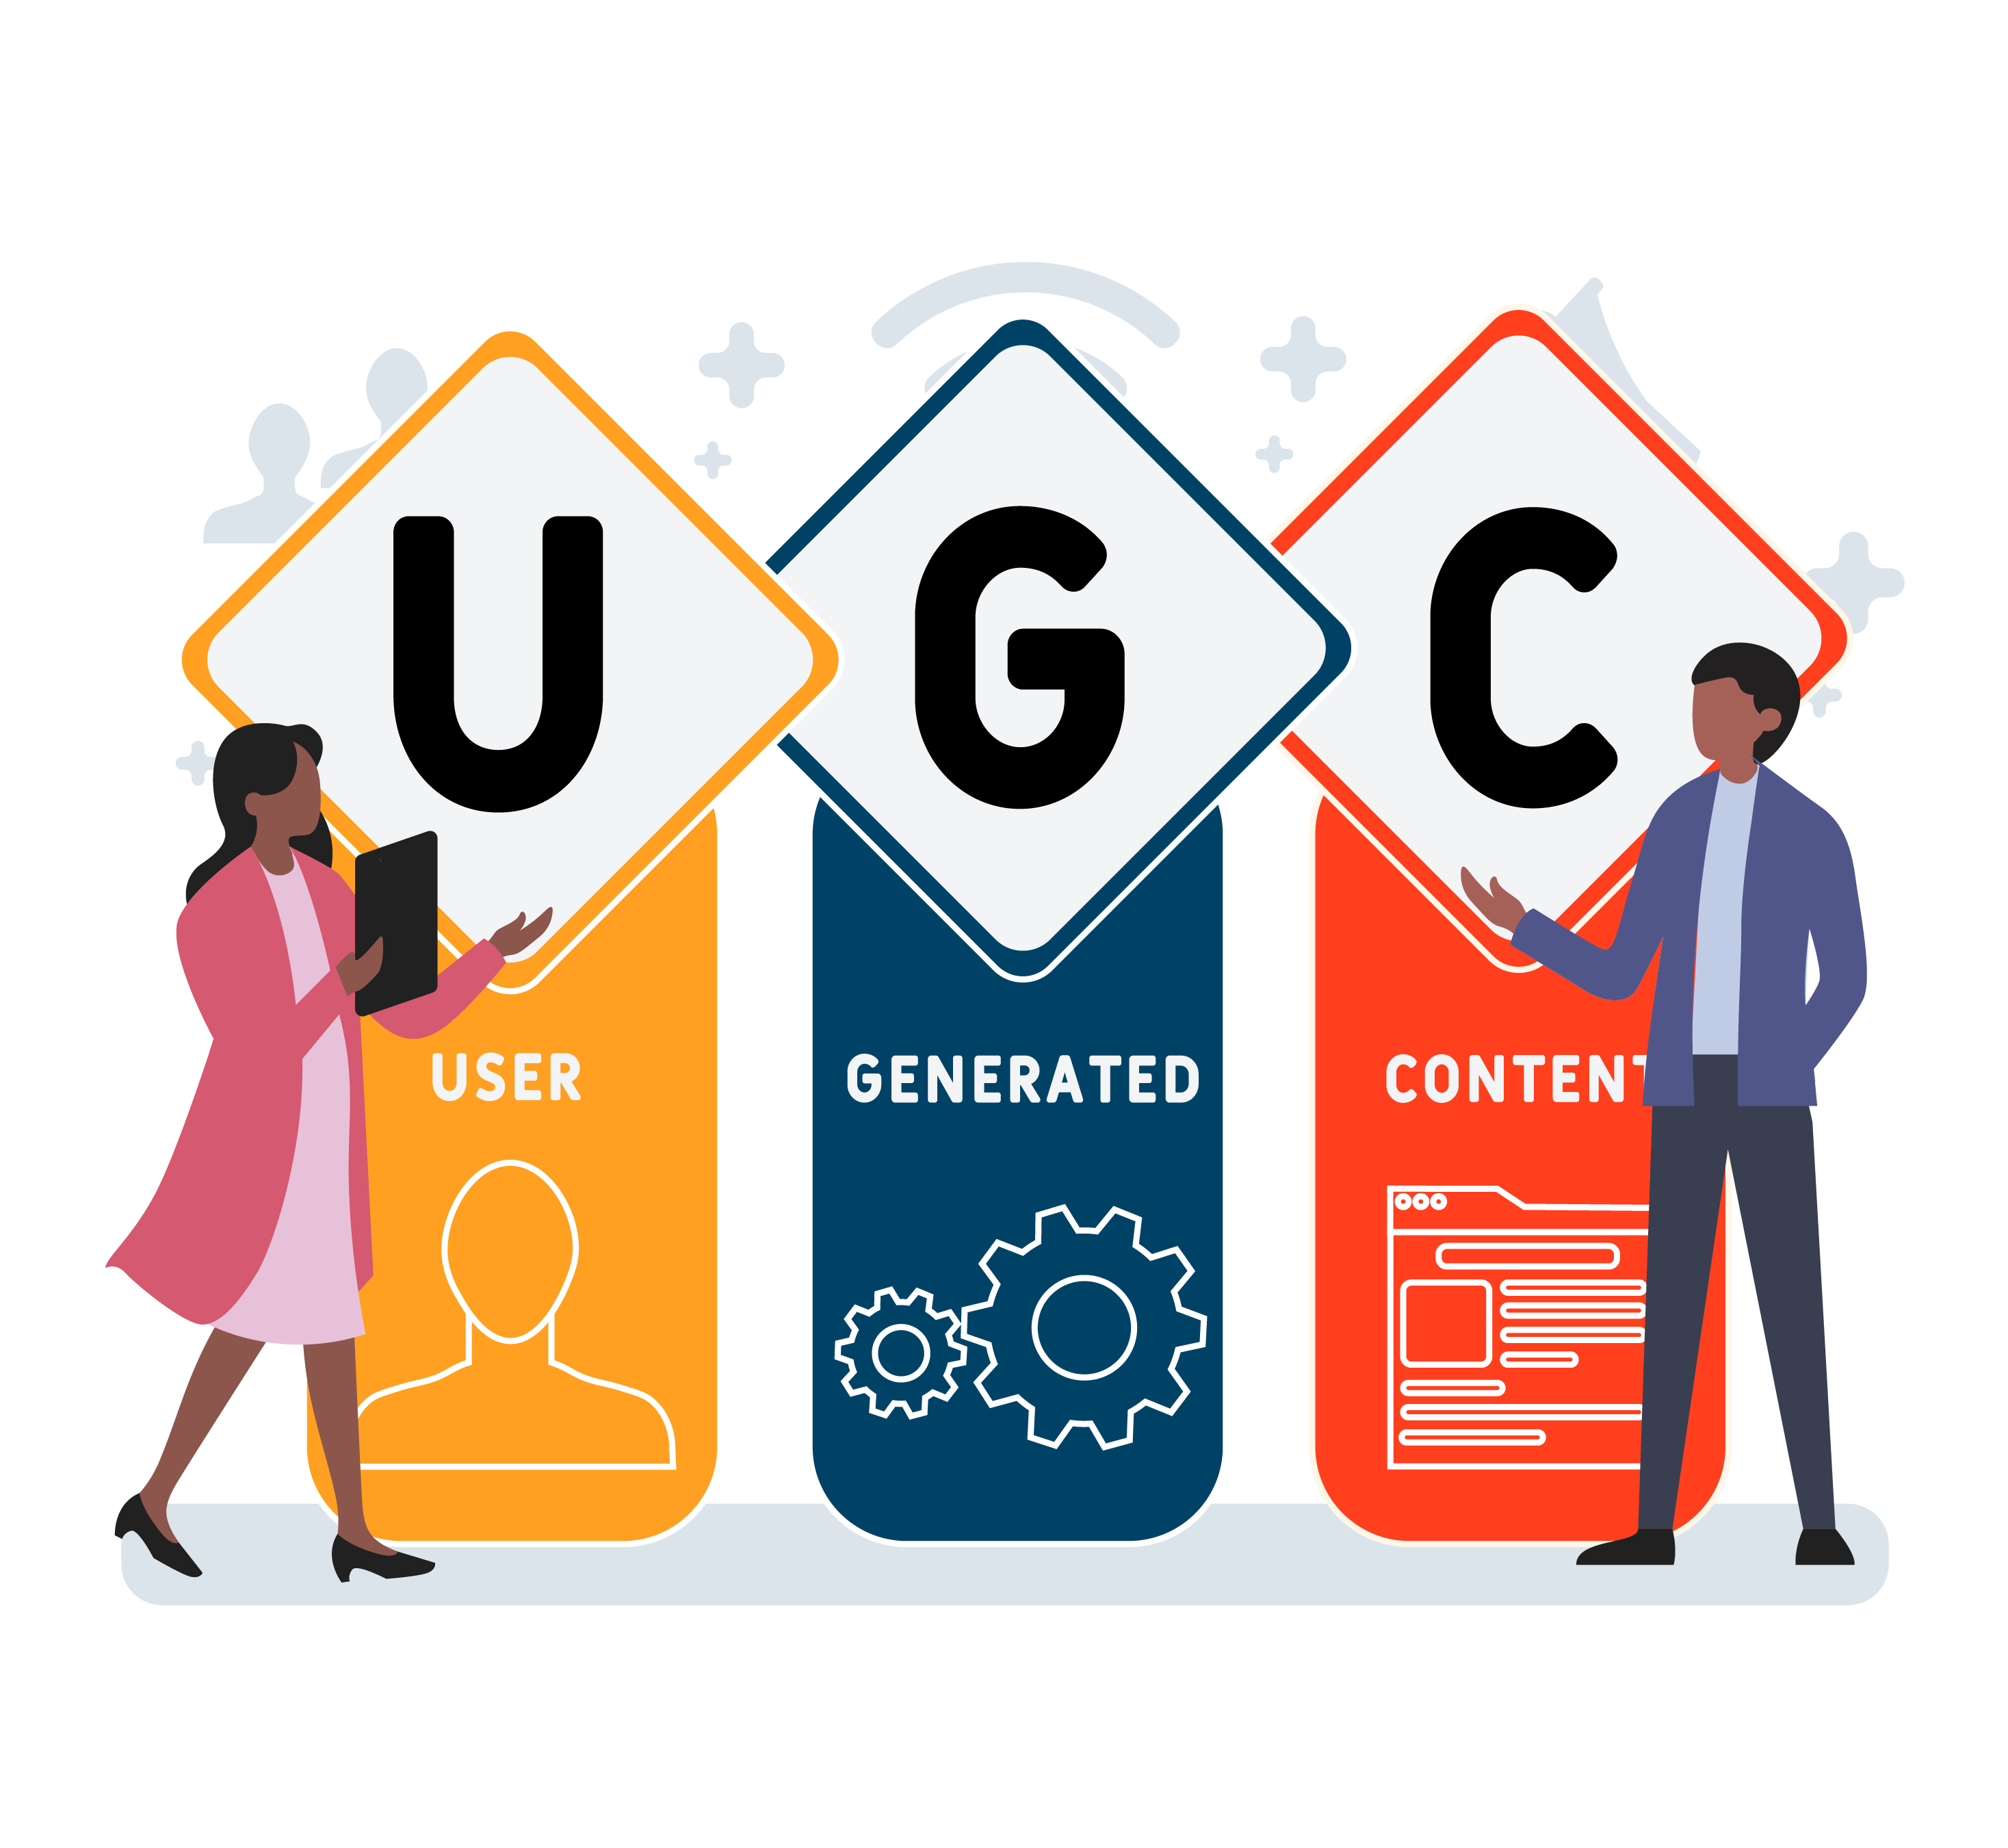 图片展示两位卡通人物，分别站在标有“UGC”字样的符号旁，代表“用户生成内容”。背景有装饰性图形。